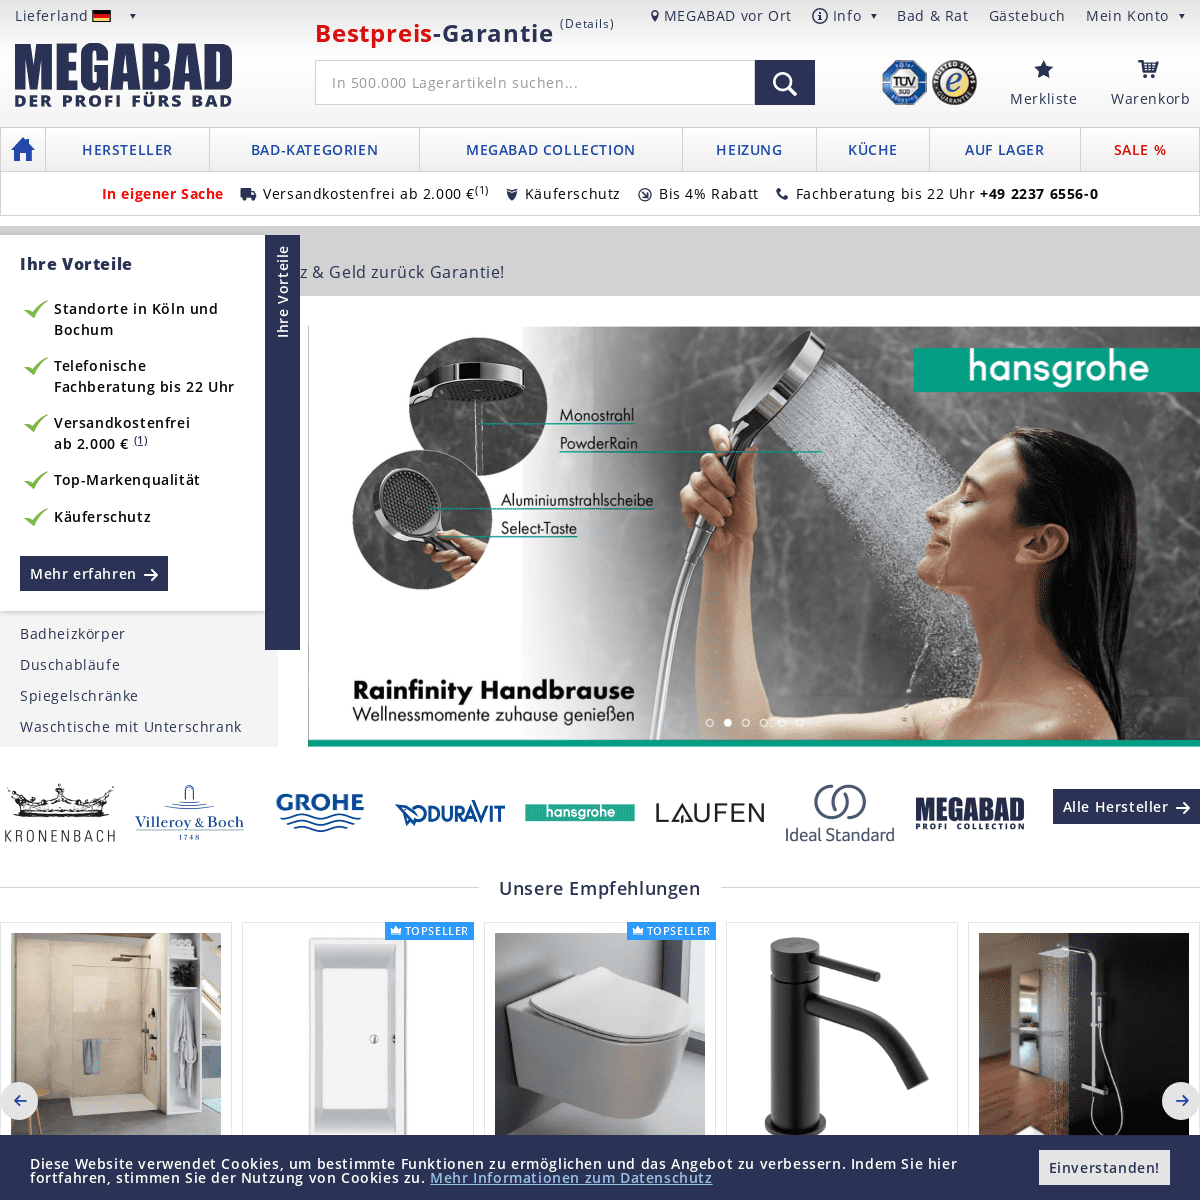 A complete backup of megabad.com